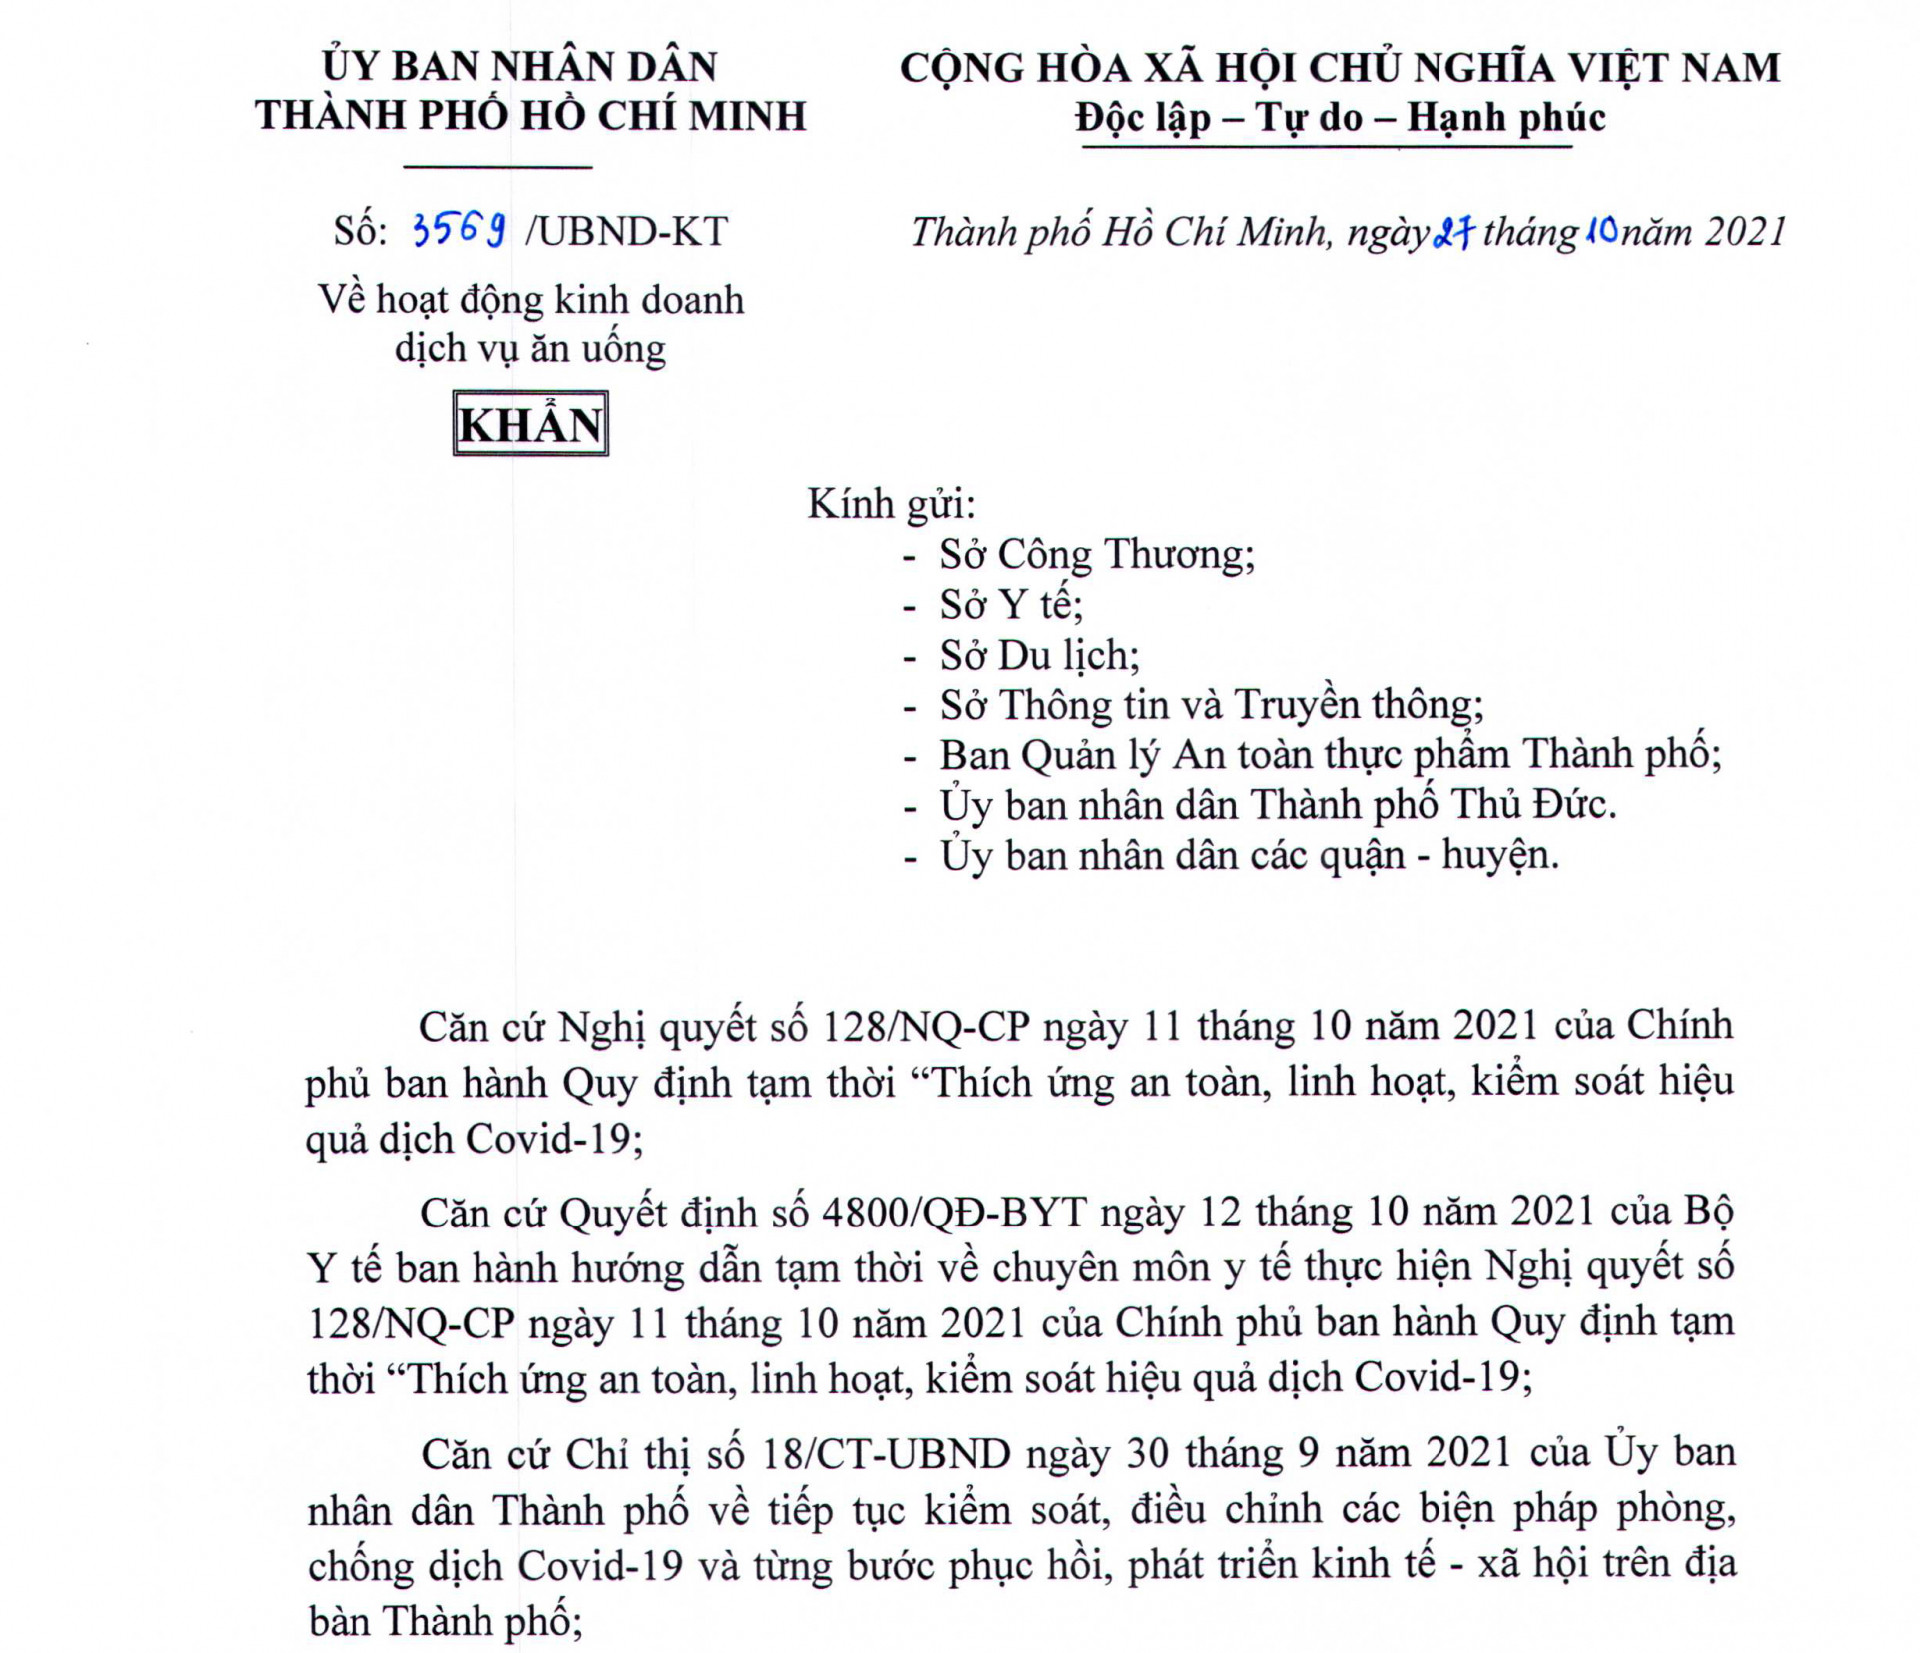 Bà Phan Thị Thắng, Phó Chủ tịch UBND TP.HCM vừa ký văn bản số 3569/UBND-KT cho phép hàng quán được bán tại chỗ từ 28/11/2021.